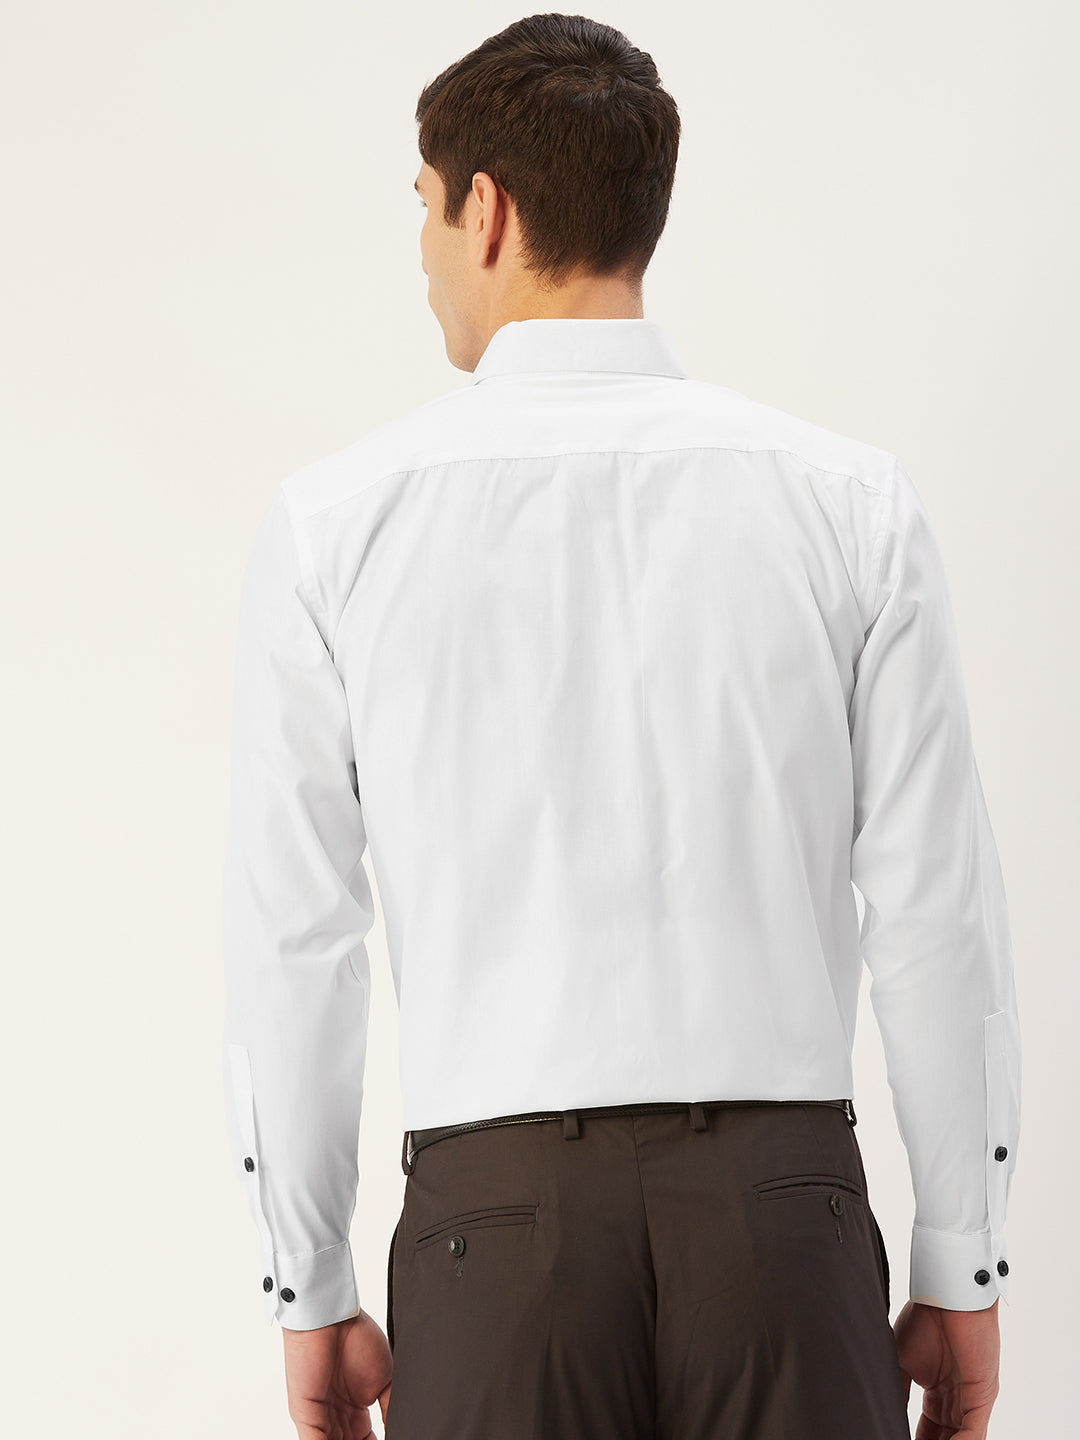 Men's Cotton Printed Formal Shirts ( SF 806White ) - Jainish